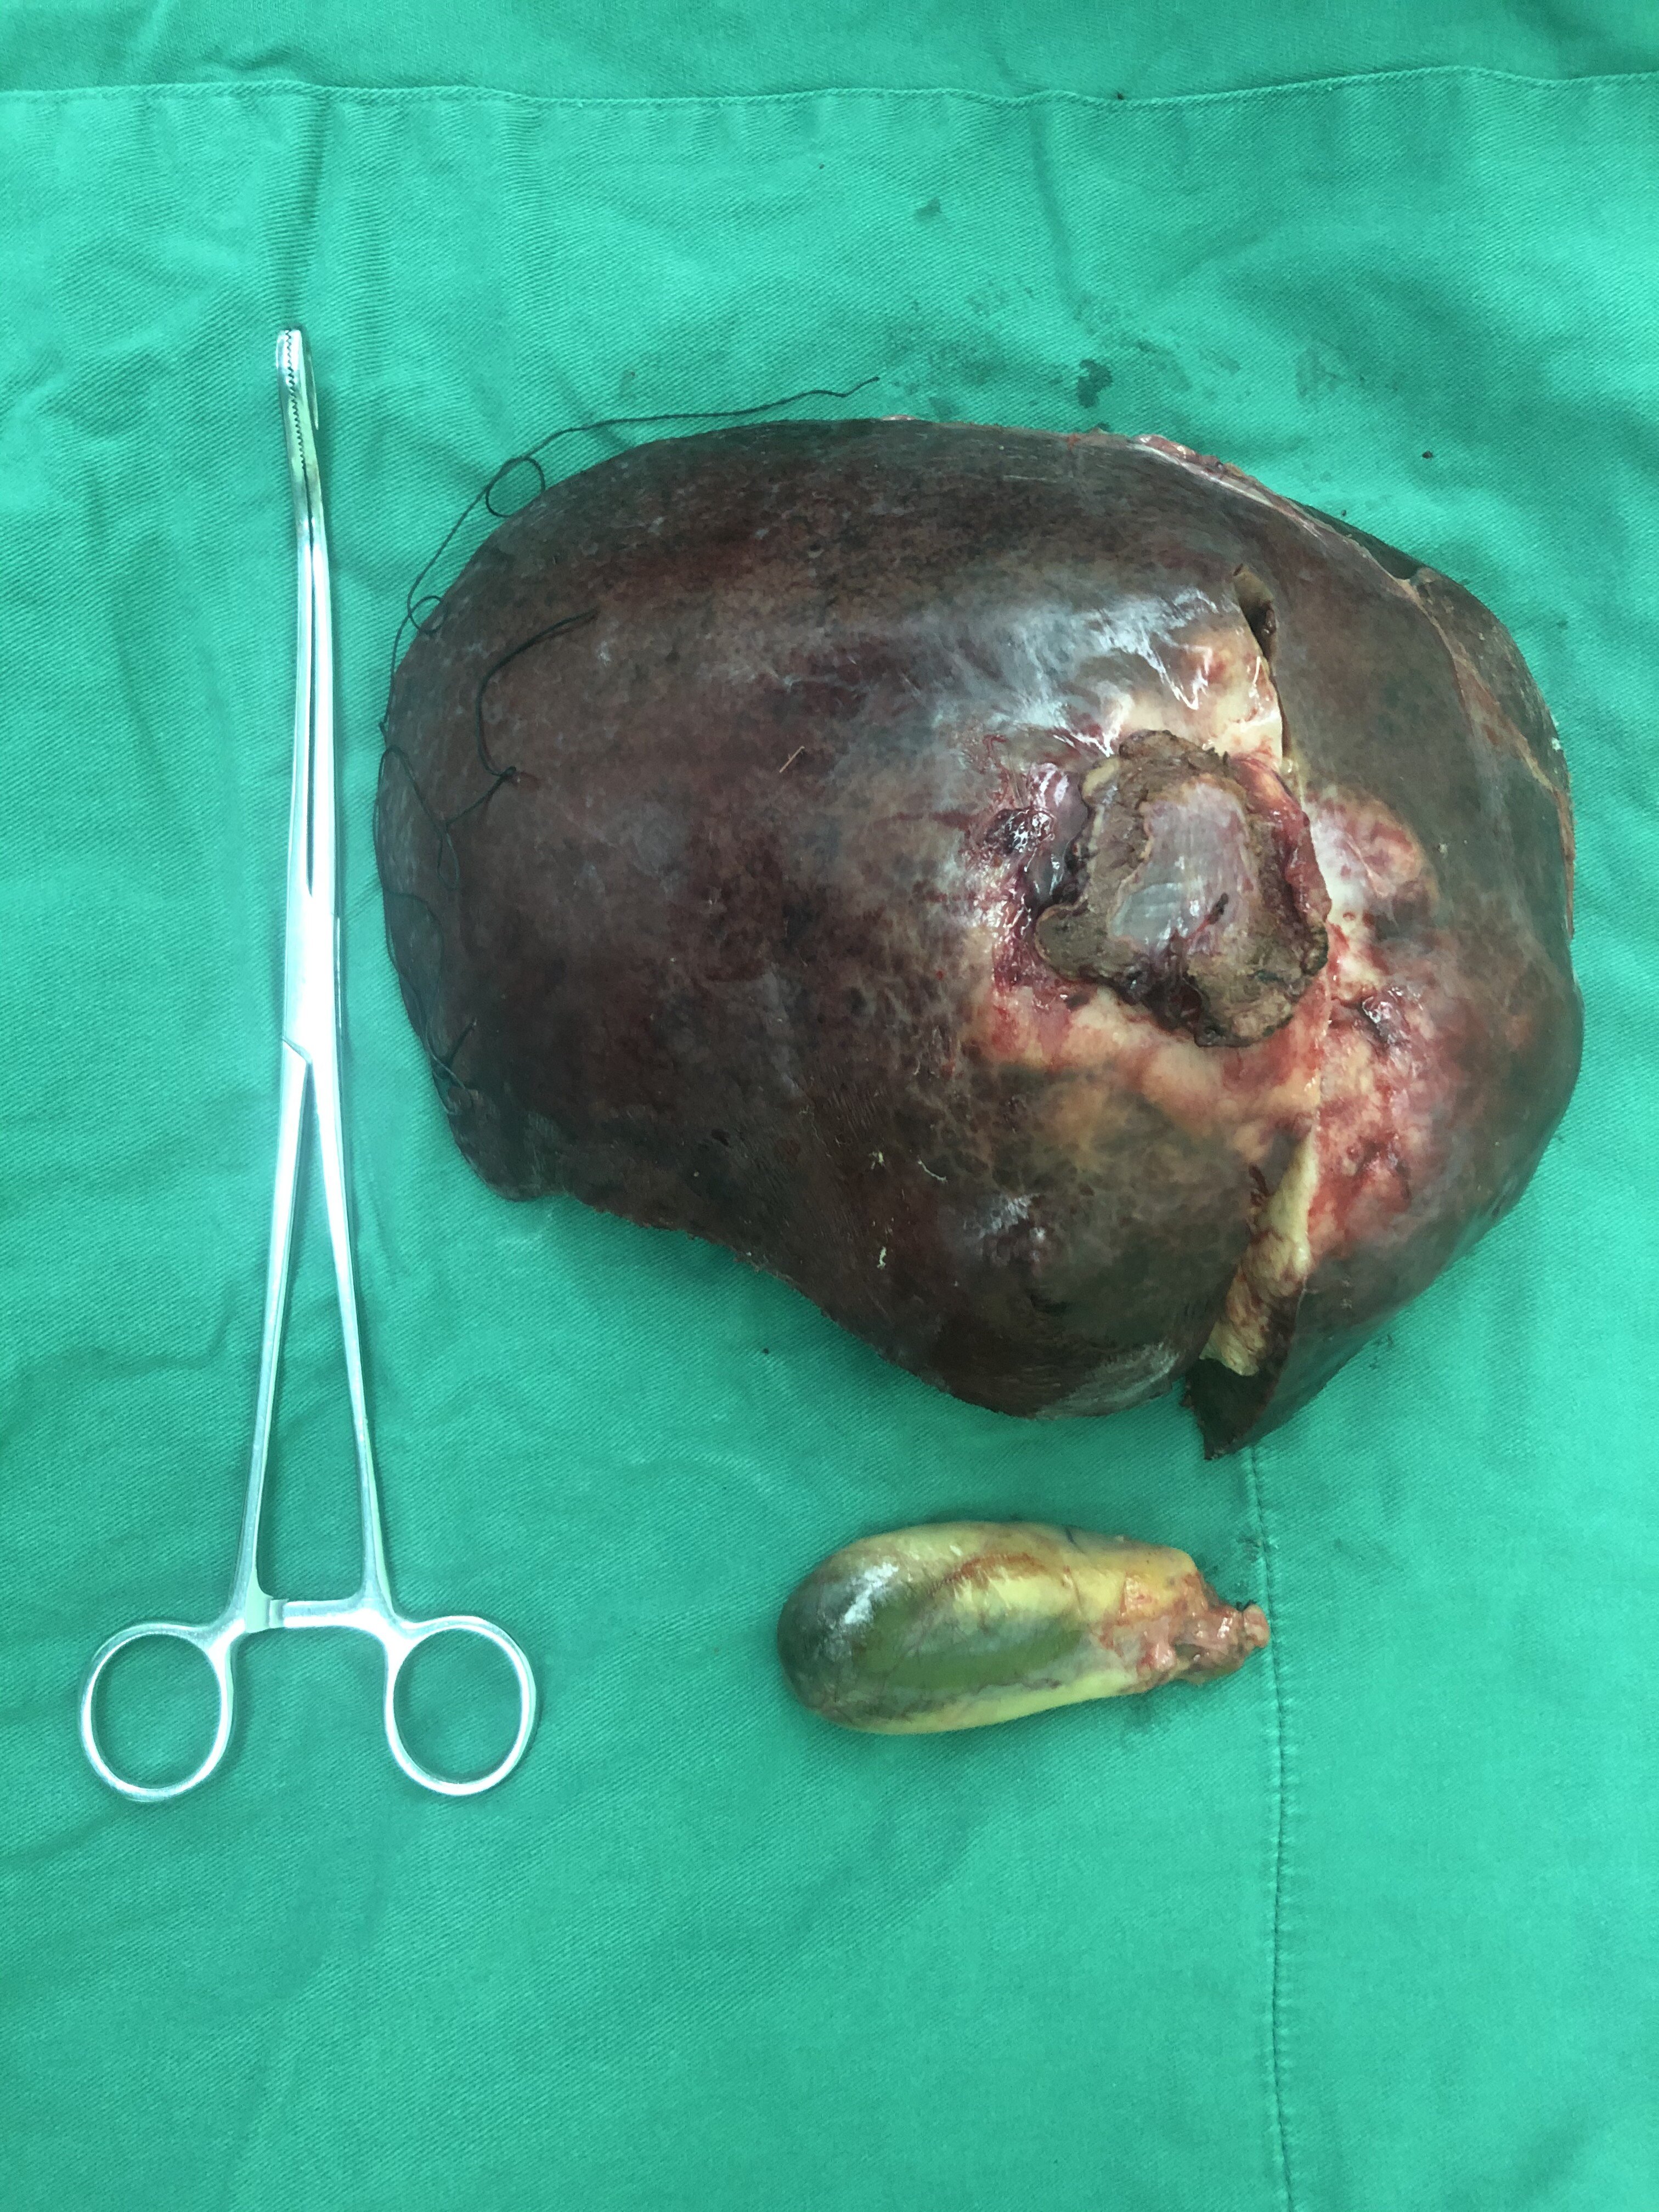 近日,我科完成一例巨大肝癌手术,采用右半肝切除术完整切除肿瘤,手术